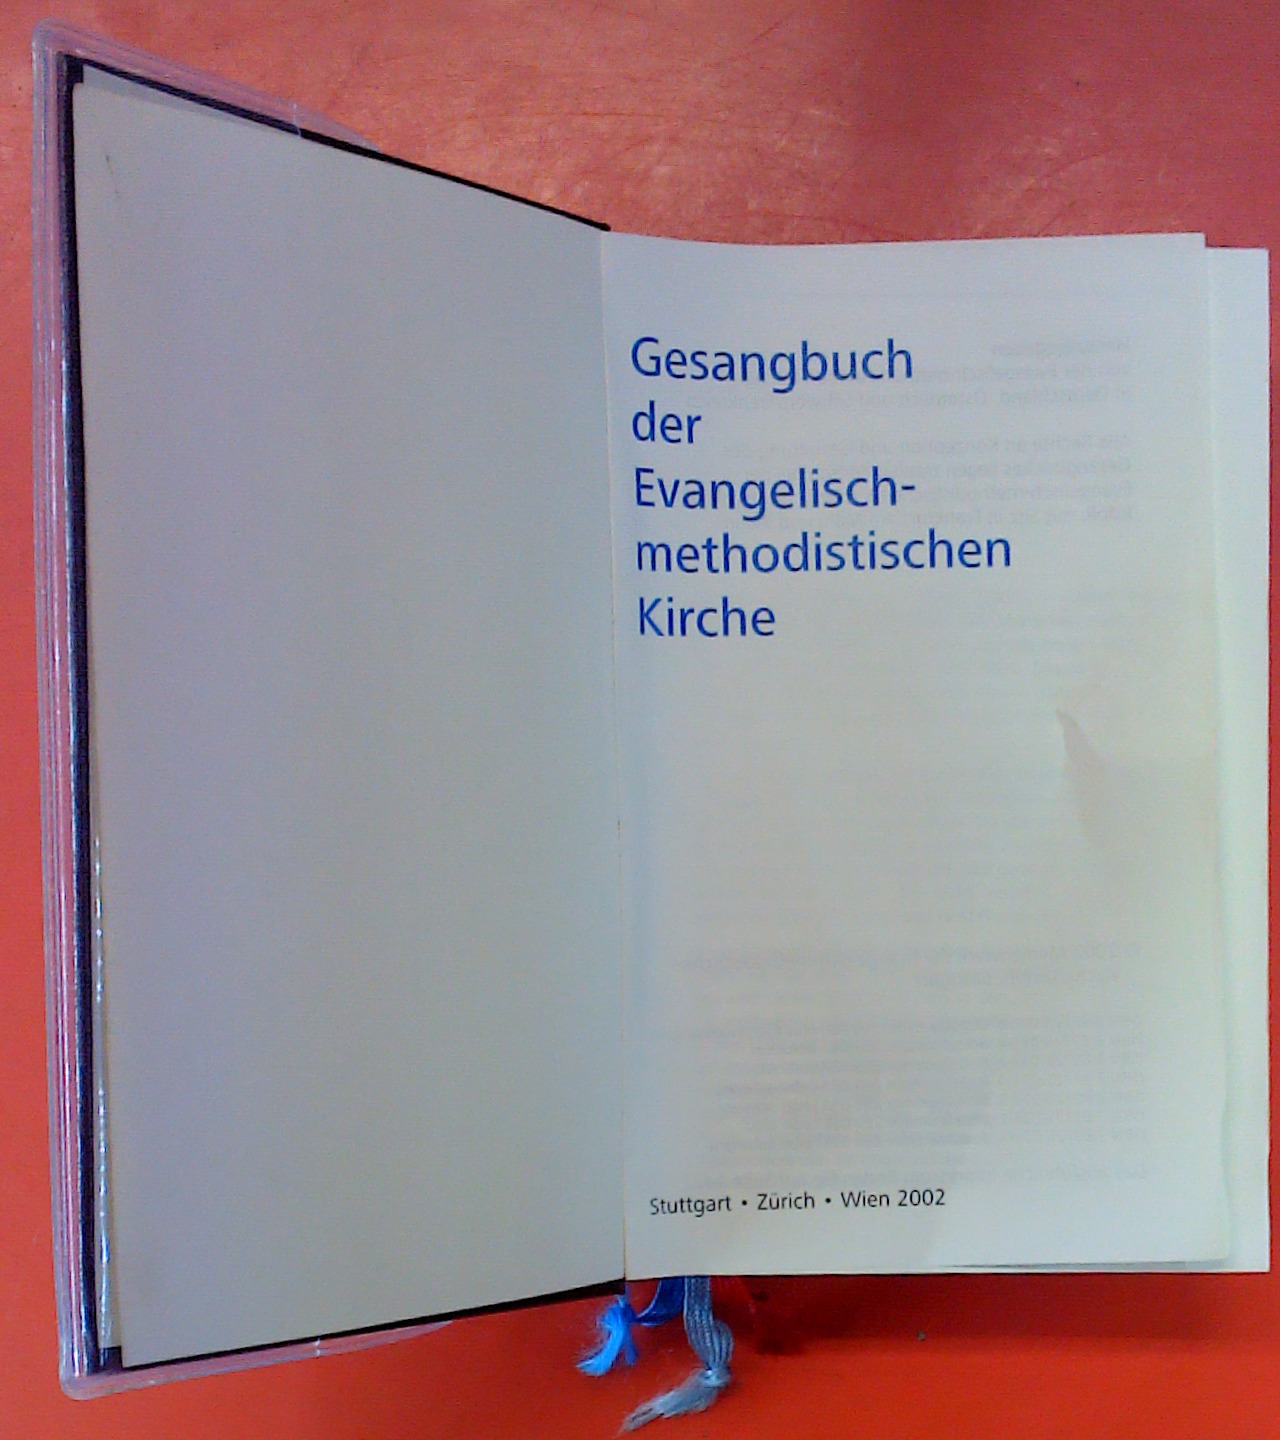 Gesangbuch der Evangelisch-methodistischen Kirche: Skivertext weinrot